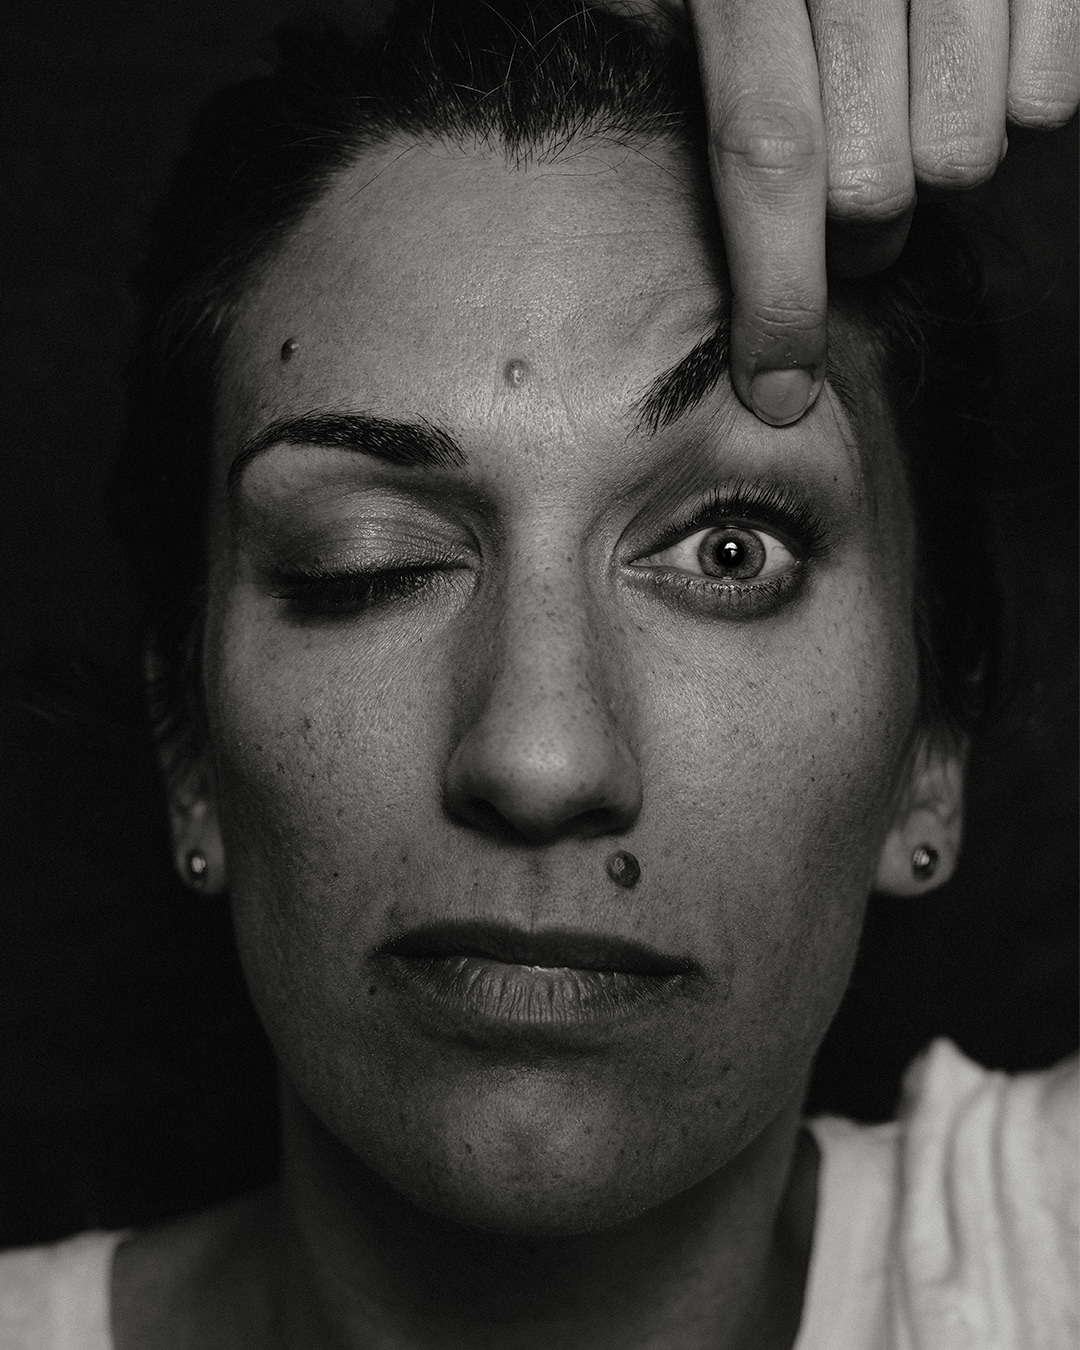 confinement headshot portrait portrait photography portraits Quarantine